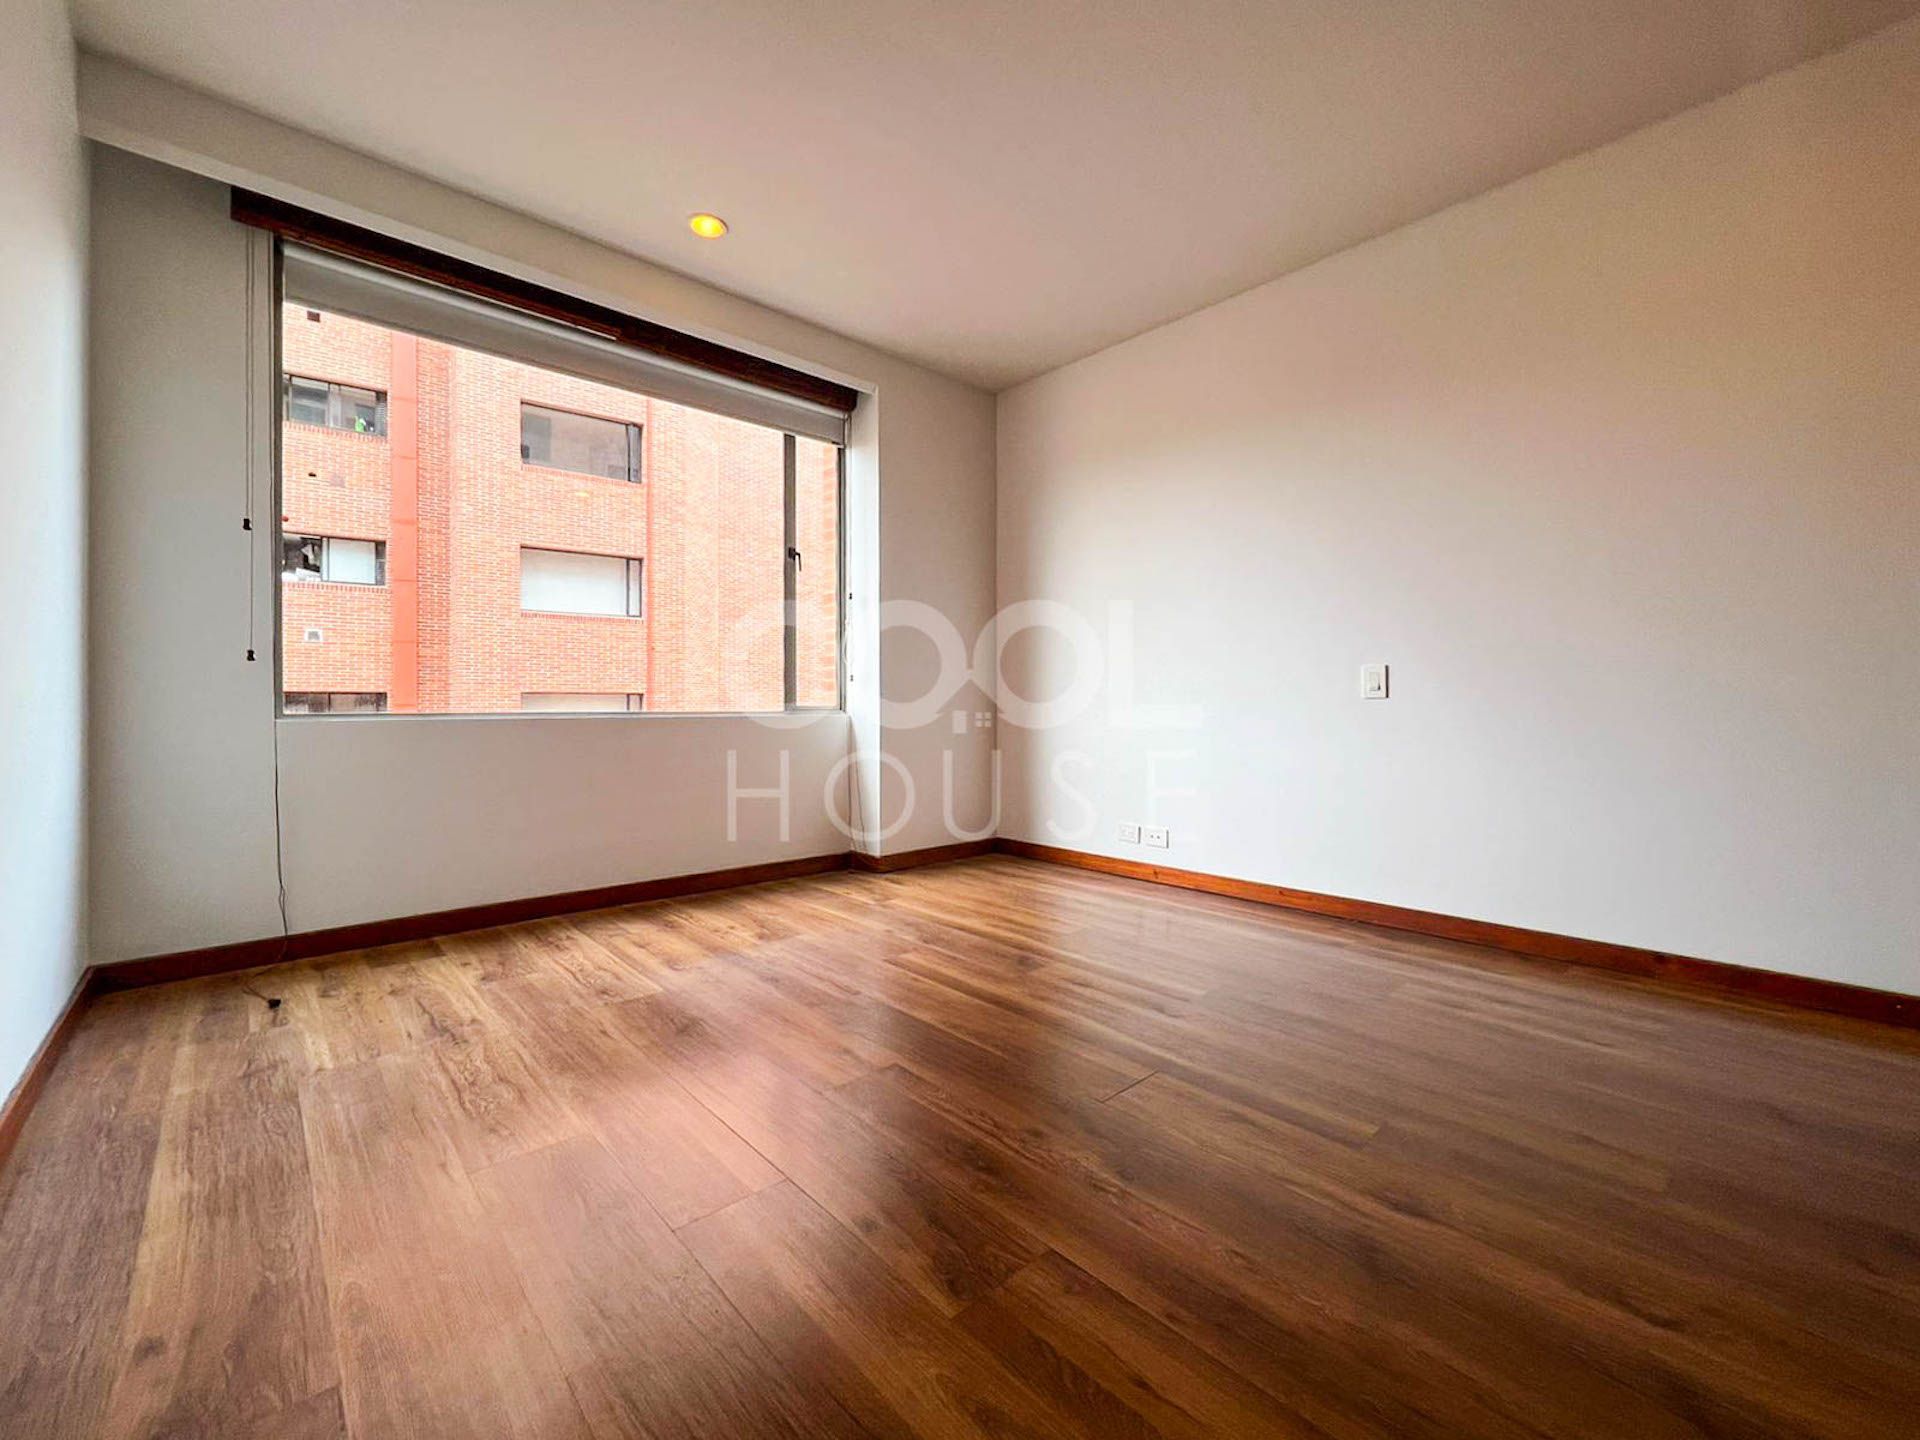 Apartamento en arriendo Hipotecho Occidental 234 m² - $ 11.290.000